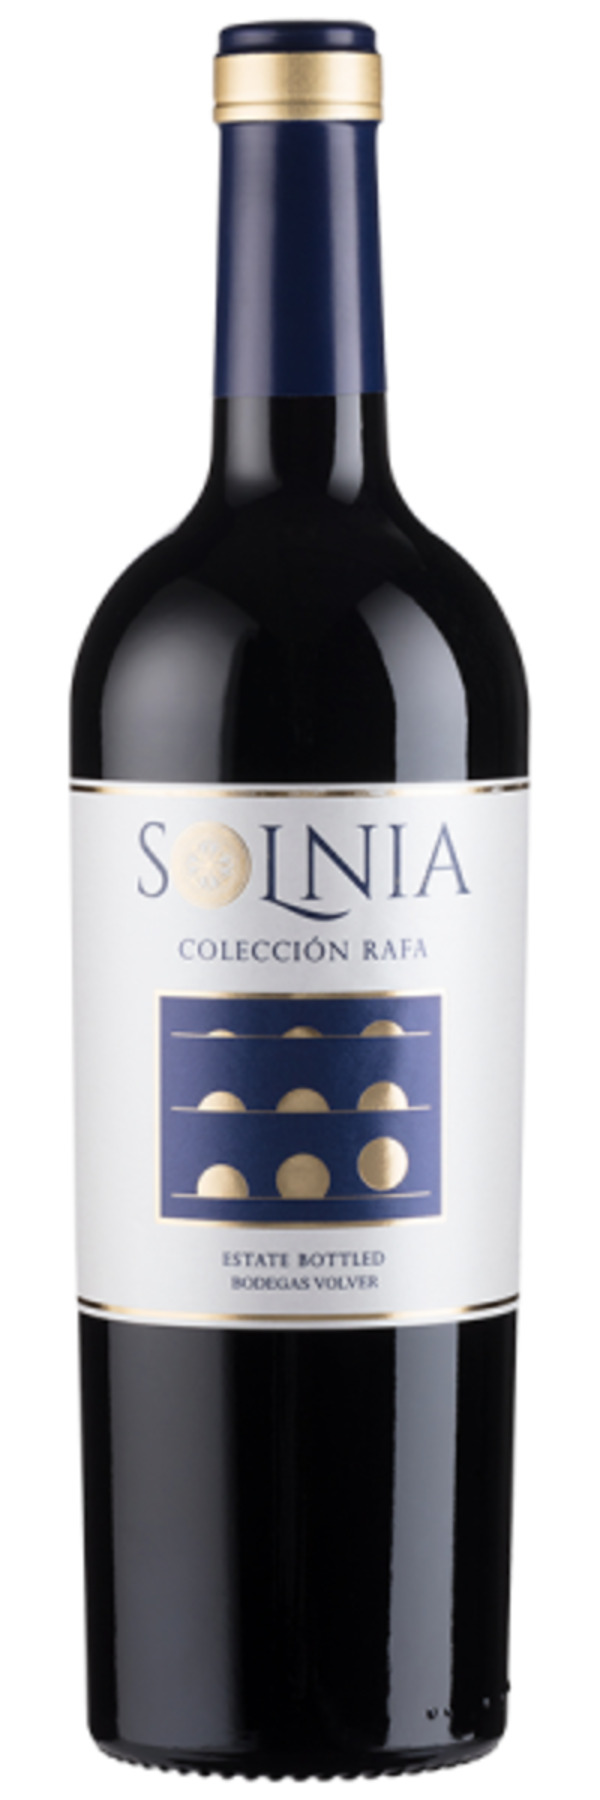 Bild 1 von Solnia Colección Rafa - 2018 - Bodegas Volver - Spanischer Rotwein